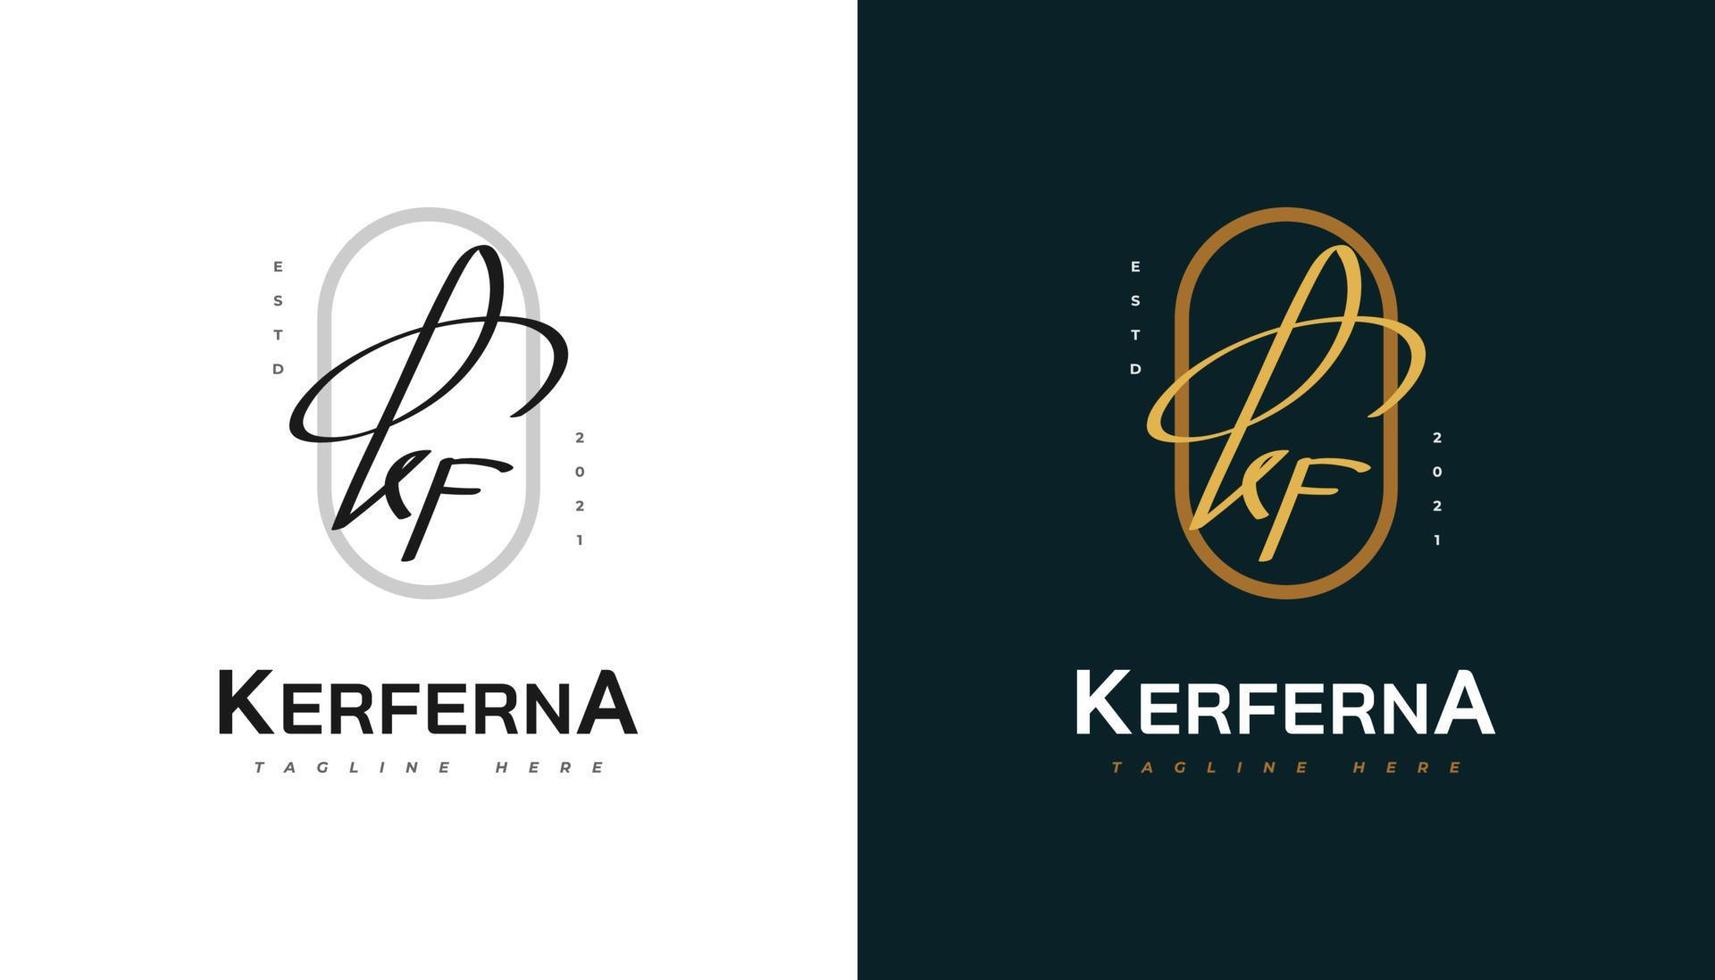 kf création initiale du logo avec un style d'écriture élégant. logo ou symbole de signature kf pour le mariage, la mode, les bijoux, la boutique, l'identité botanique, florale et commerciale vecteur